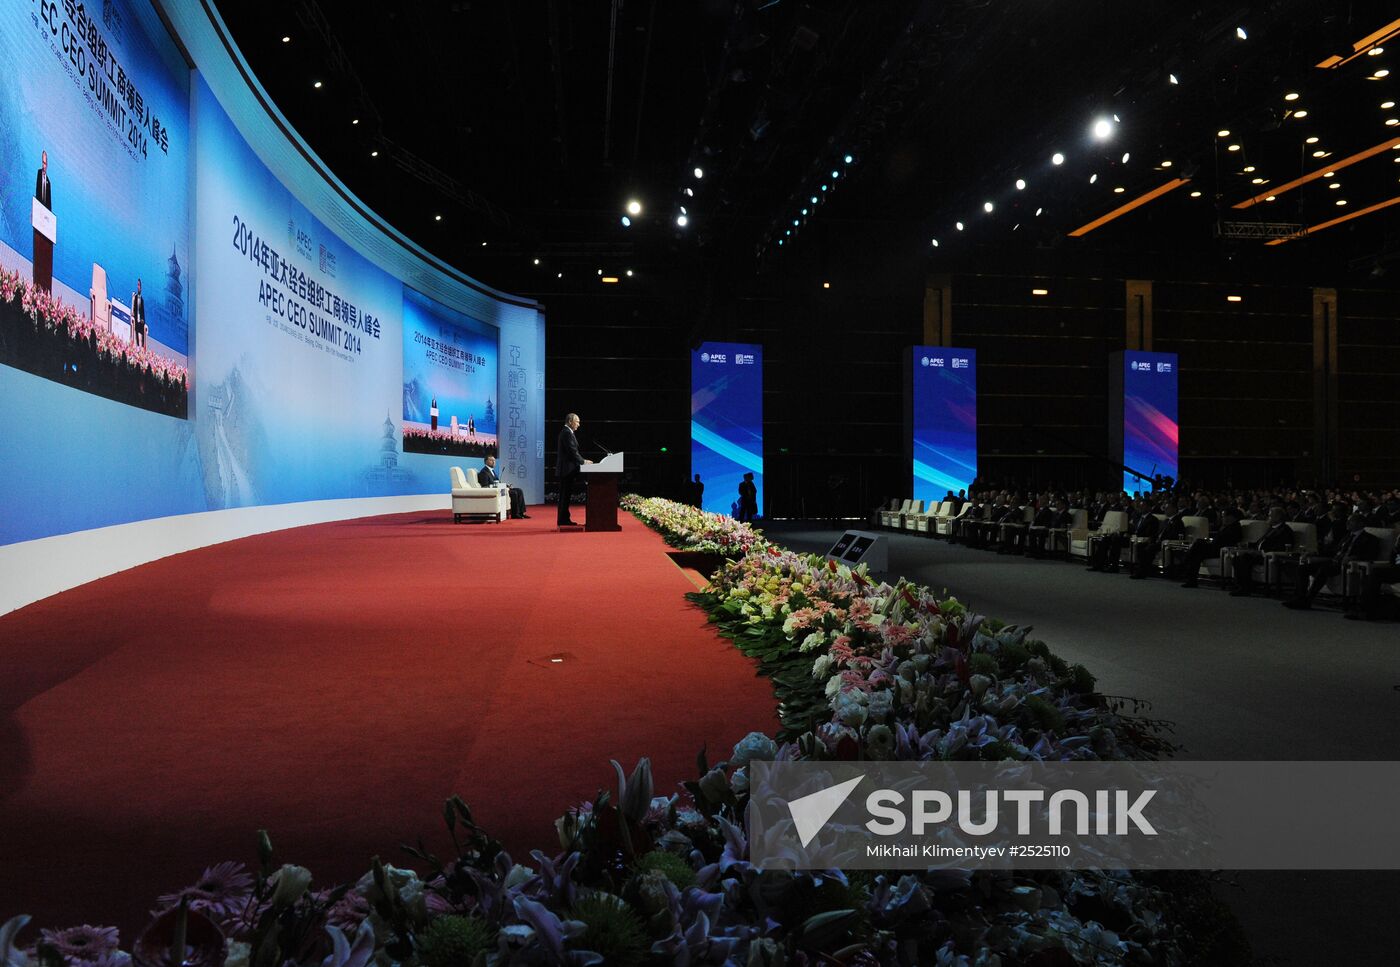 Vladimir Putin at APEC summit